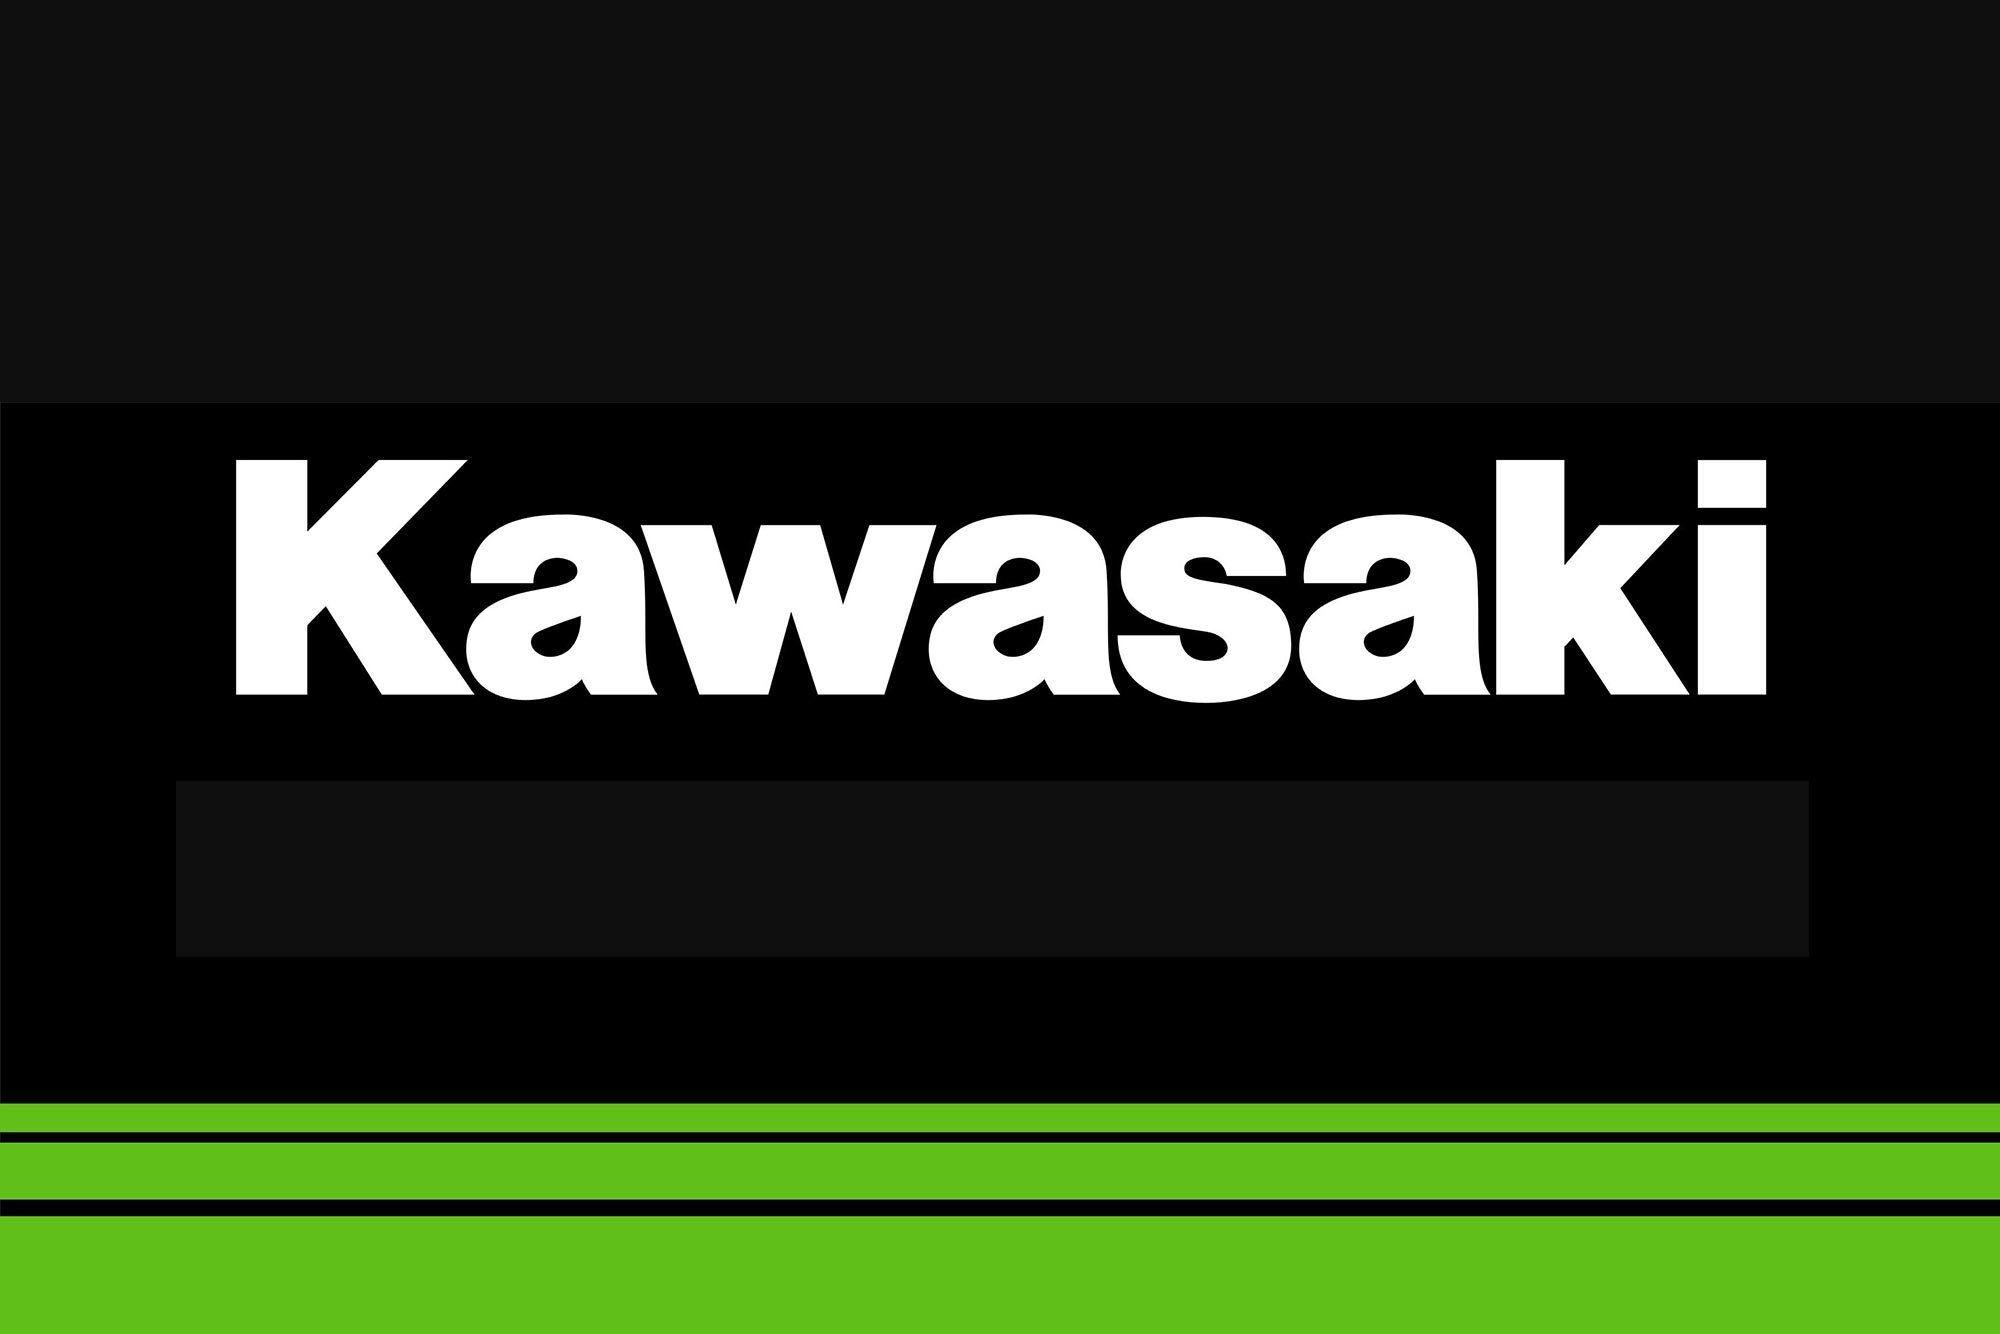 2018 Kawasaki Logo - Kawasaki Ninja 400 Coming to the USA for 2018 & Rubber